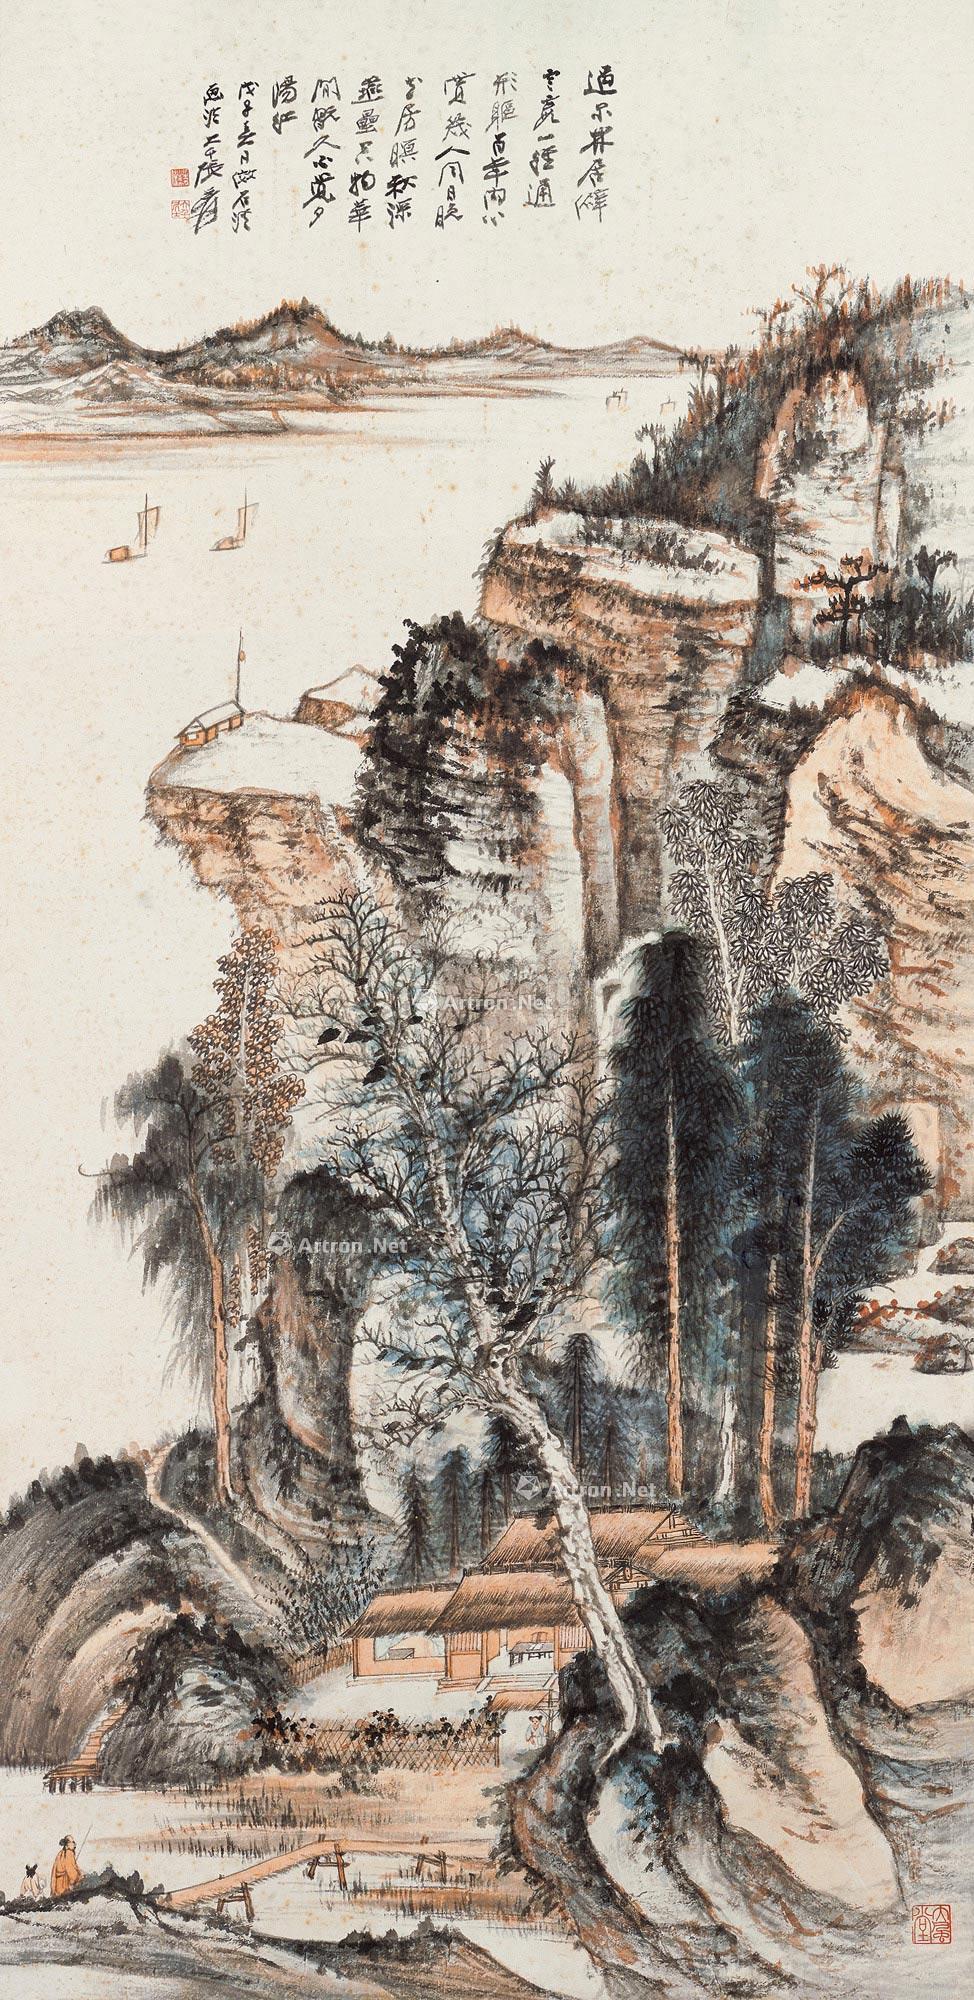 拟石溪溪山留客图 镜心作者张大千 (1899～1983)拍品分类中国书画